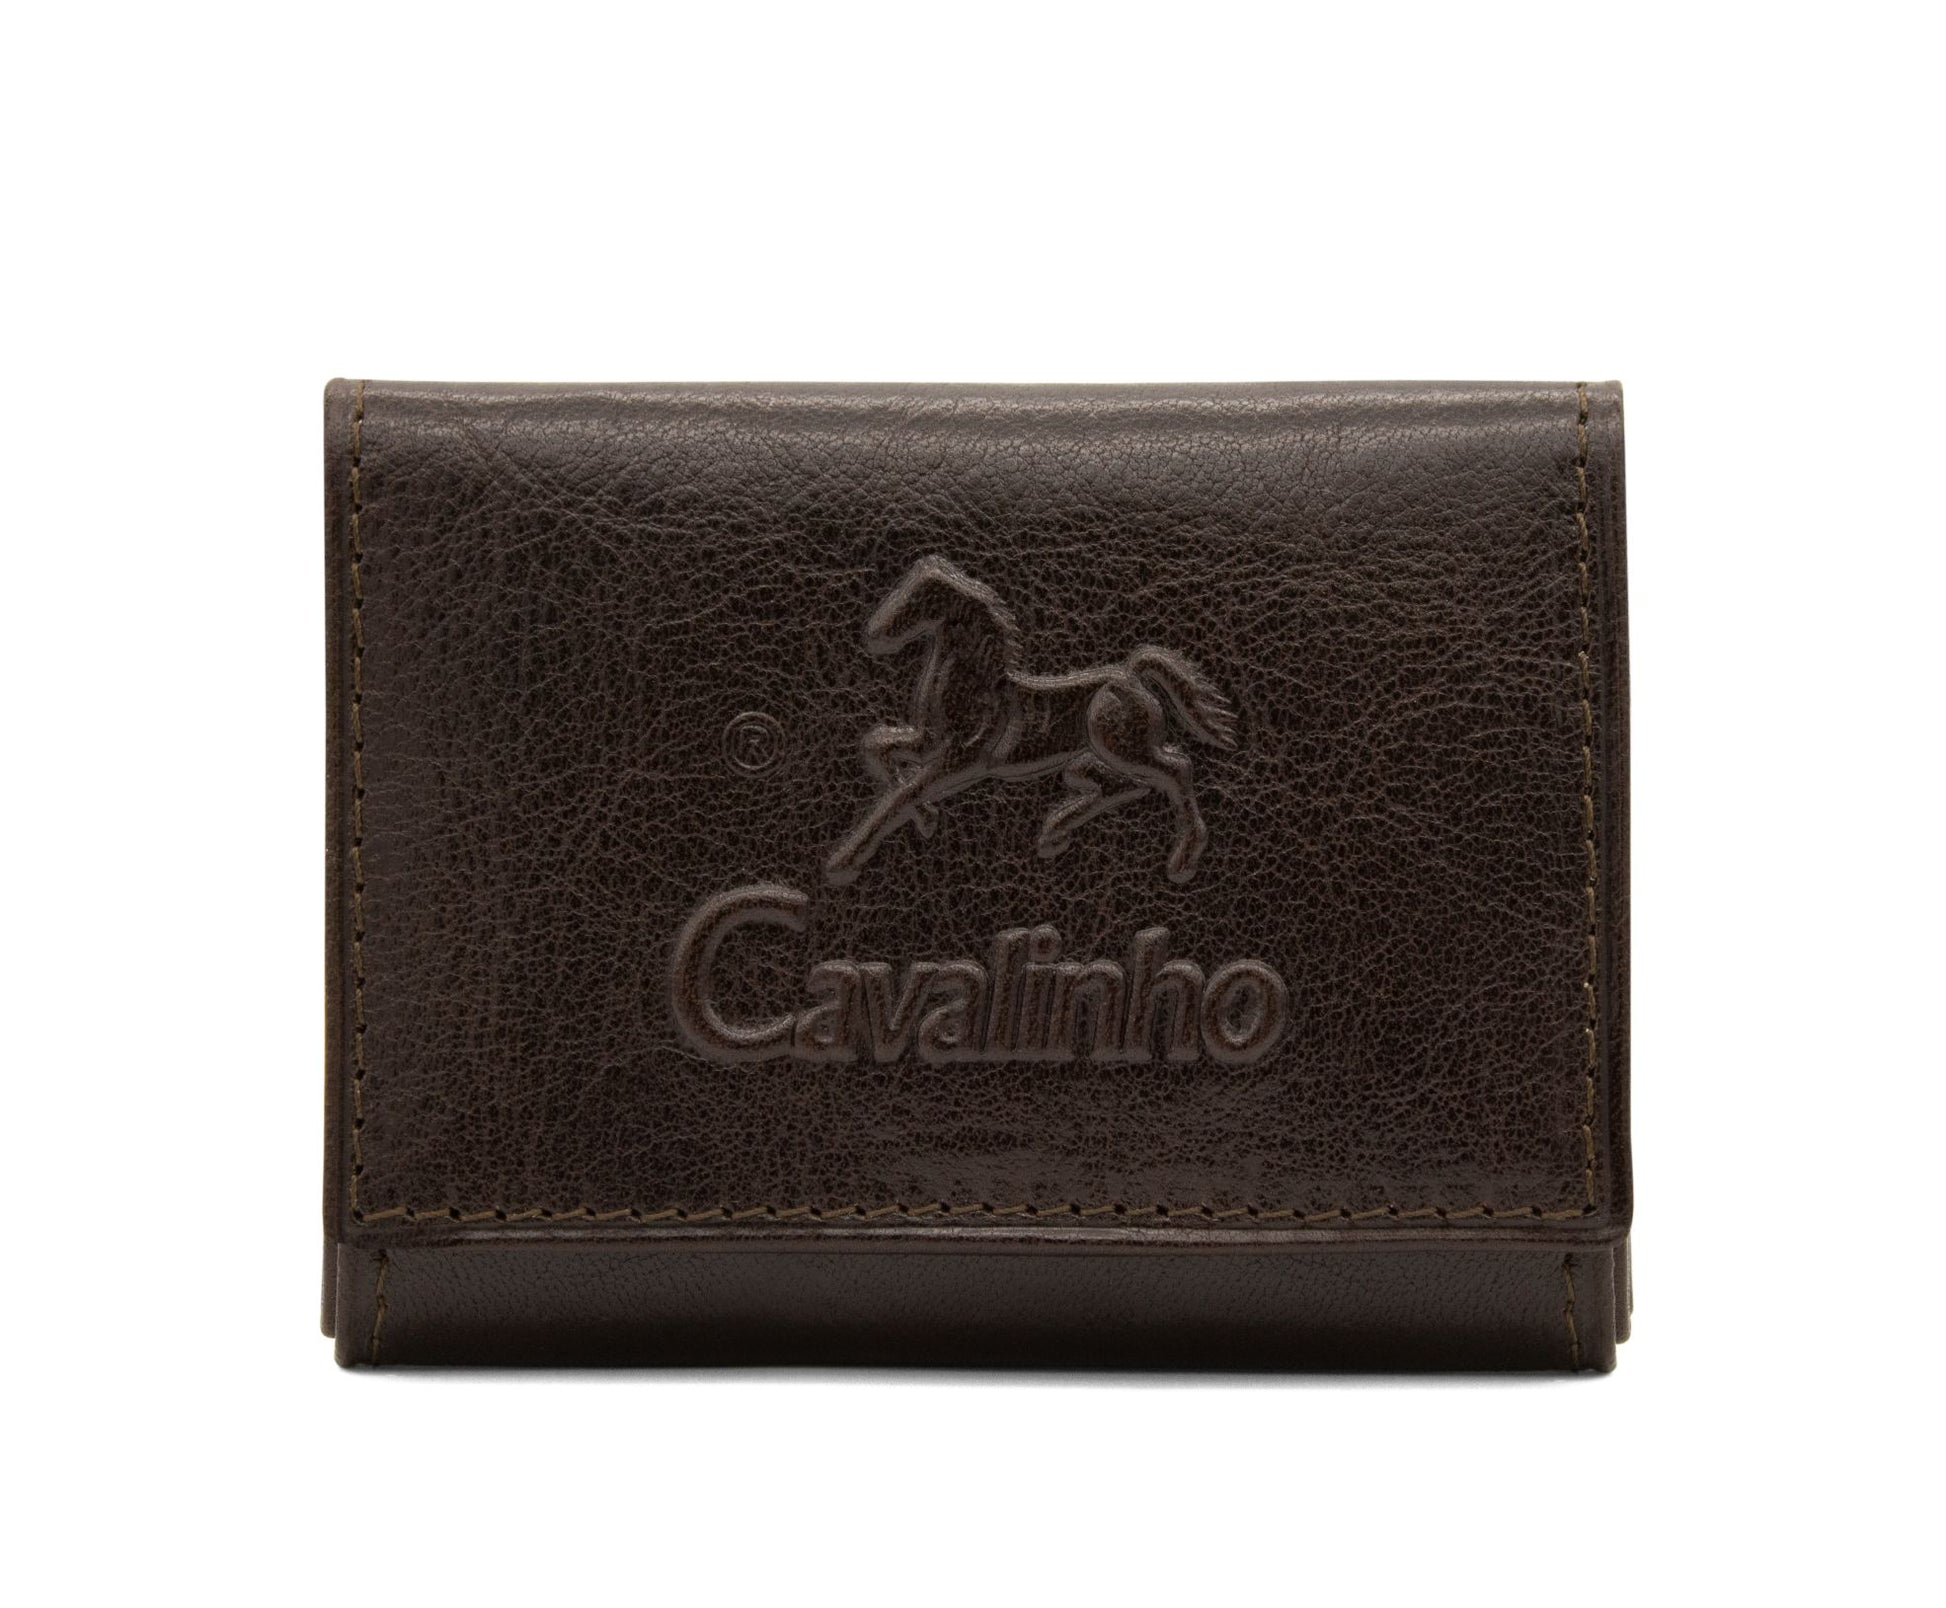 Cavalinho Leather Card Holder Wallet - Brown - 28610519.02_1